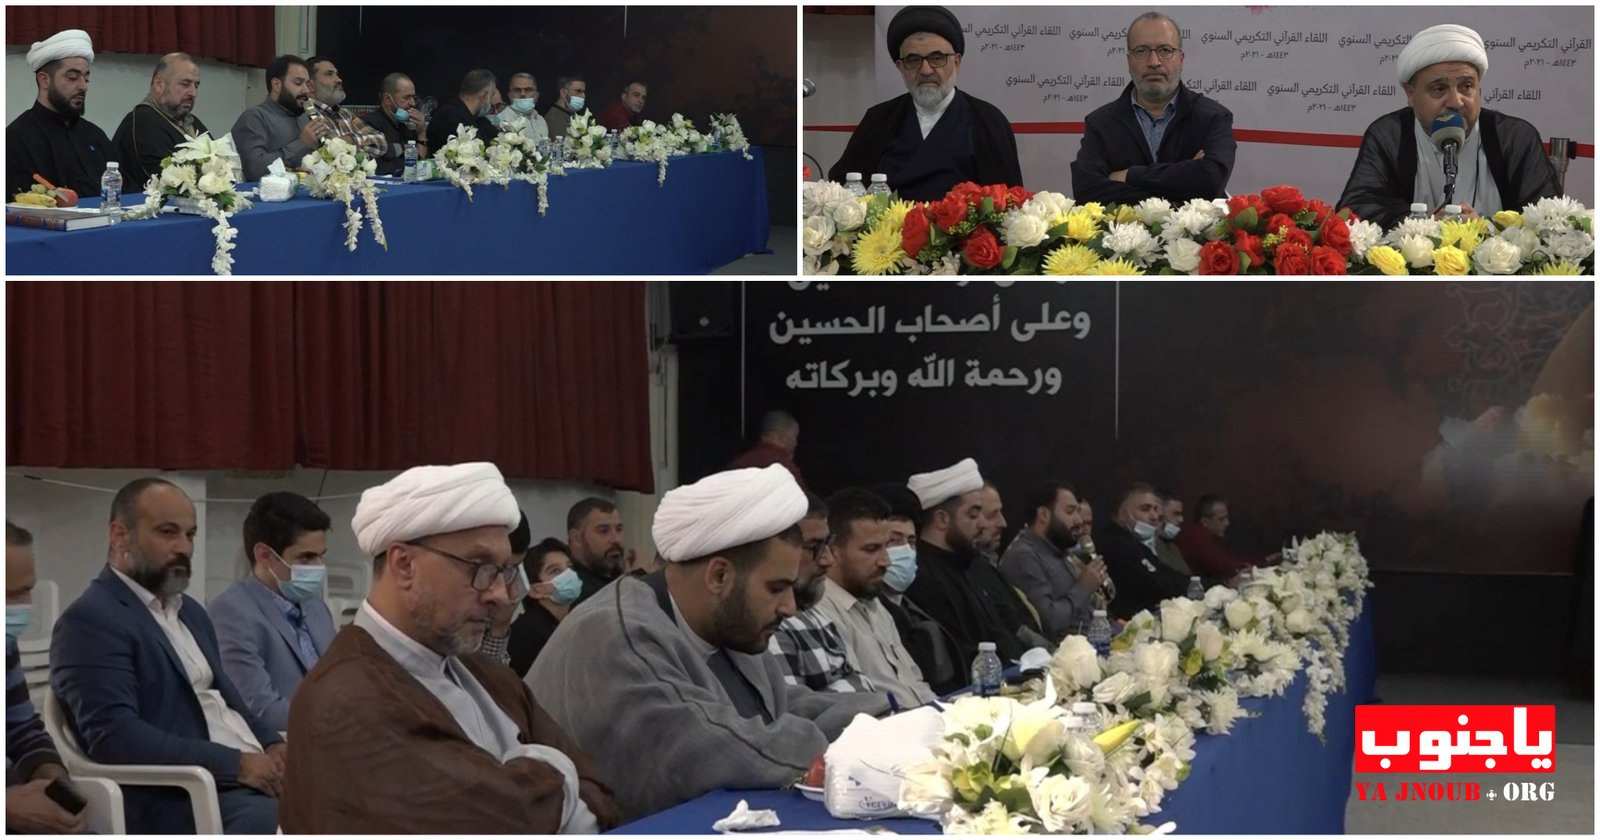 جمعية المعارف الإسلامية الثقافية في المنطقة الأولى تقيم اللقاء القرآني التكريمي السنوي.